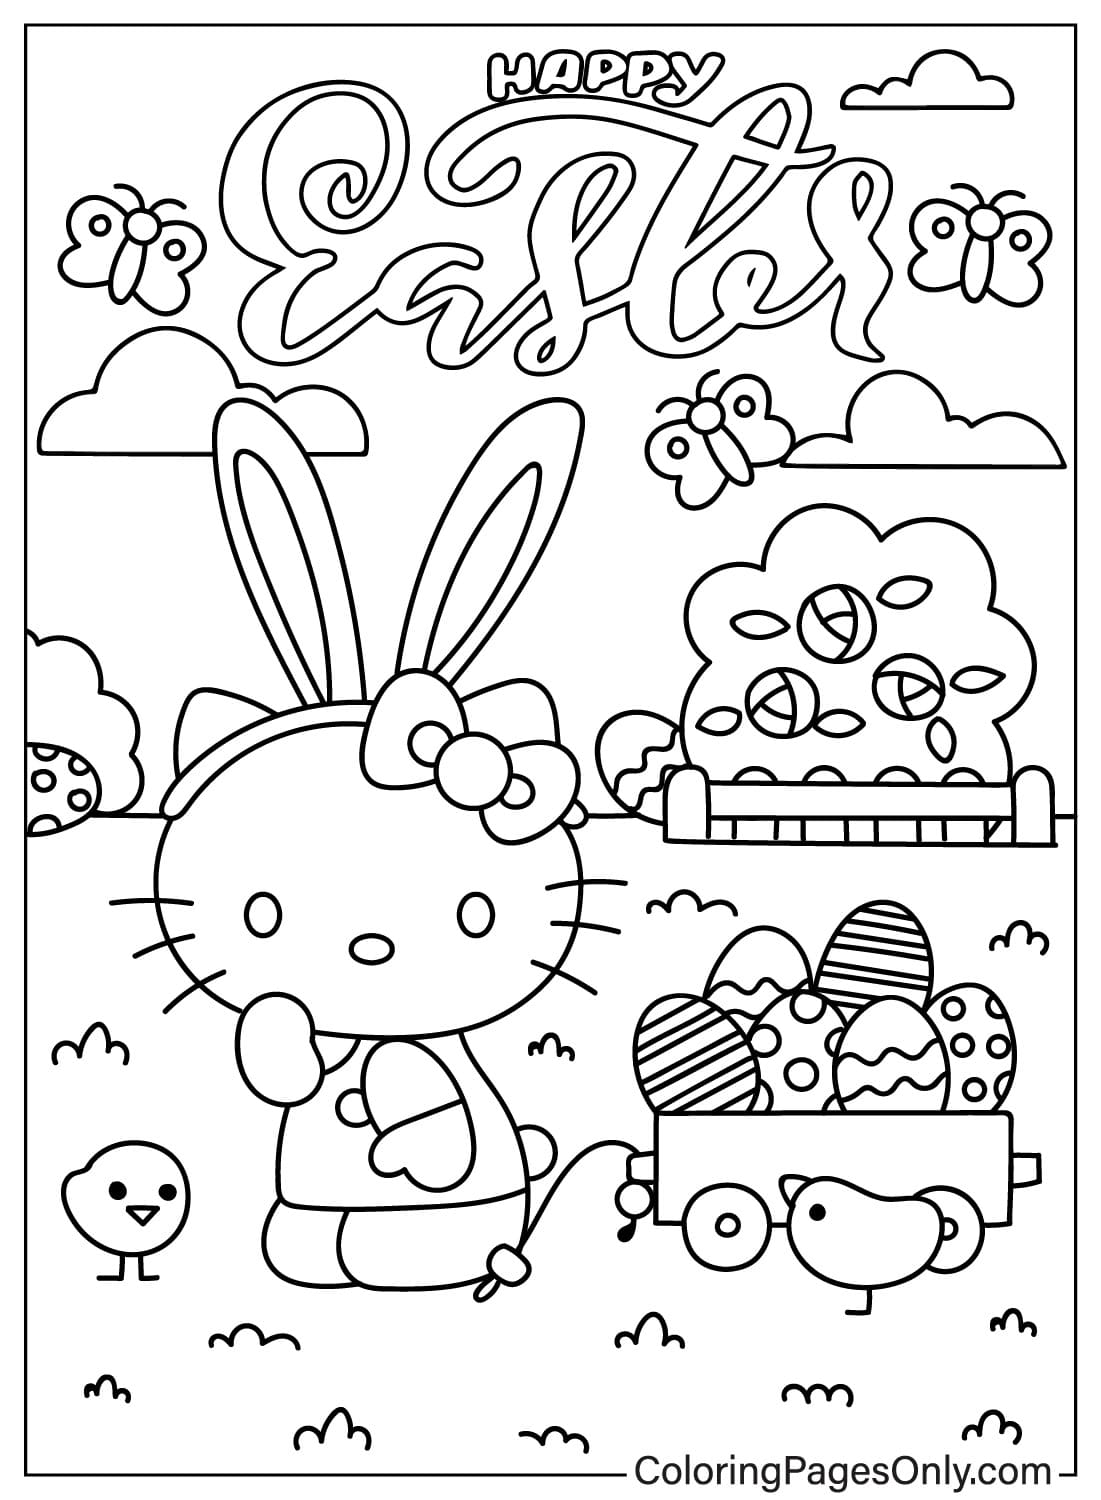 Página para colorear de Hello Kitty de Pascua de dibujos animados de Pascua